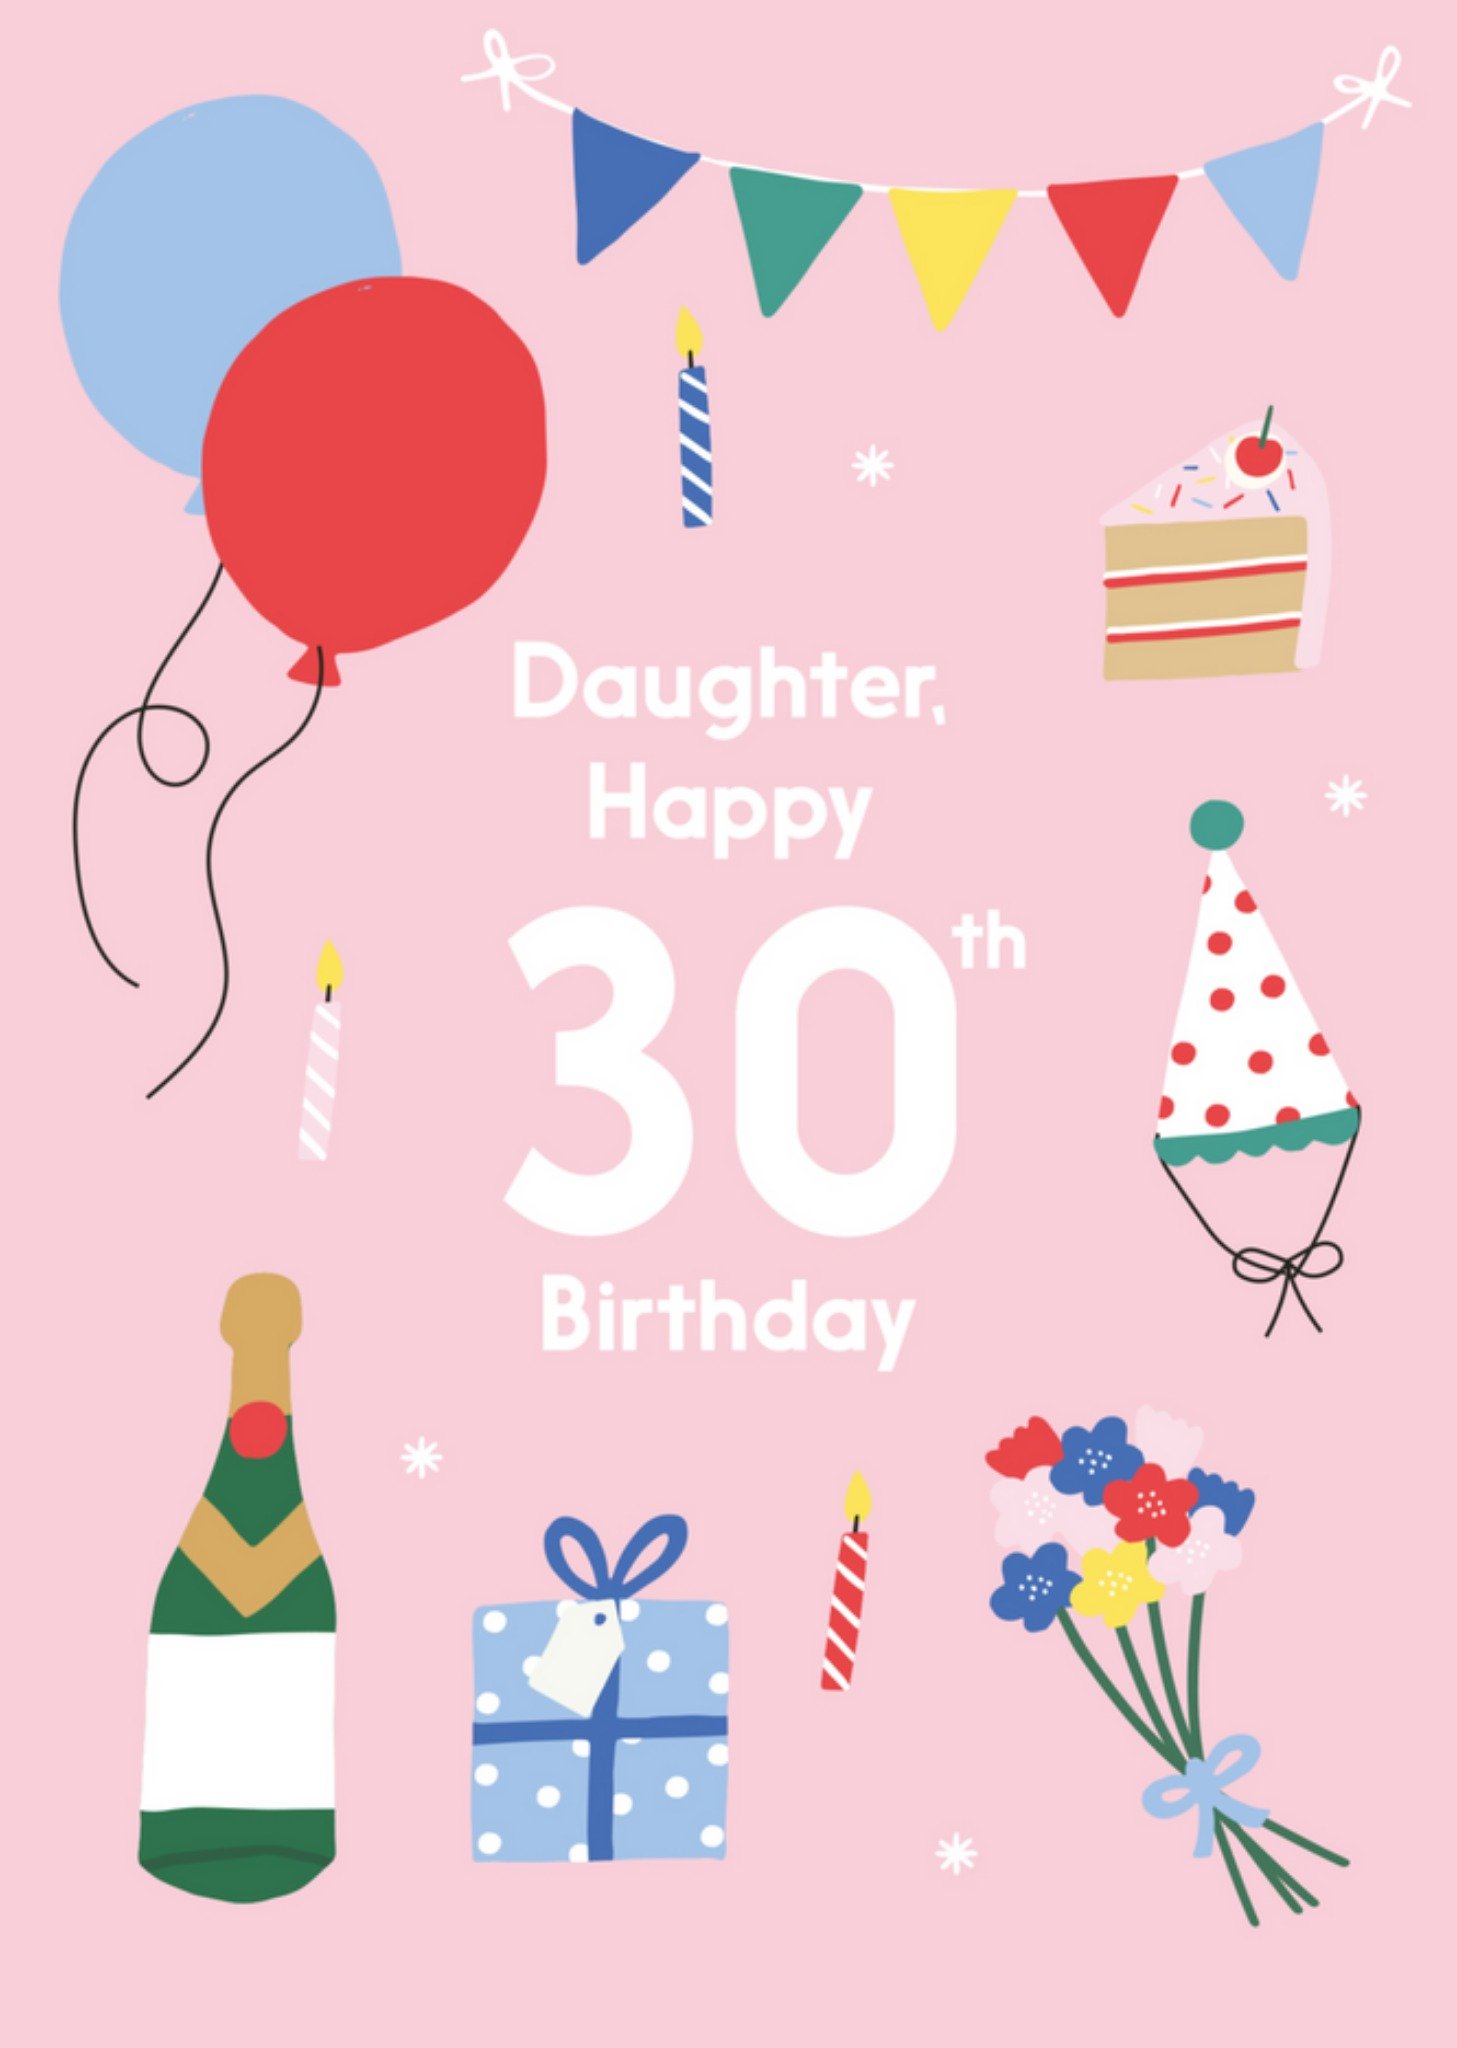 Verjaardagskaart - Daughter happy 30th